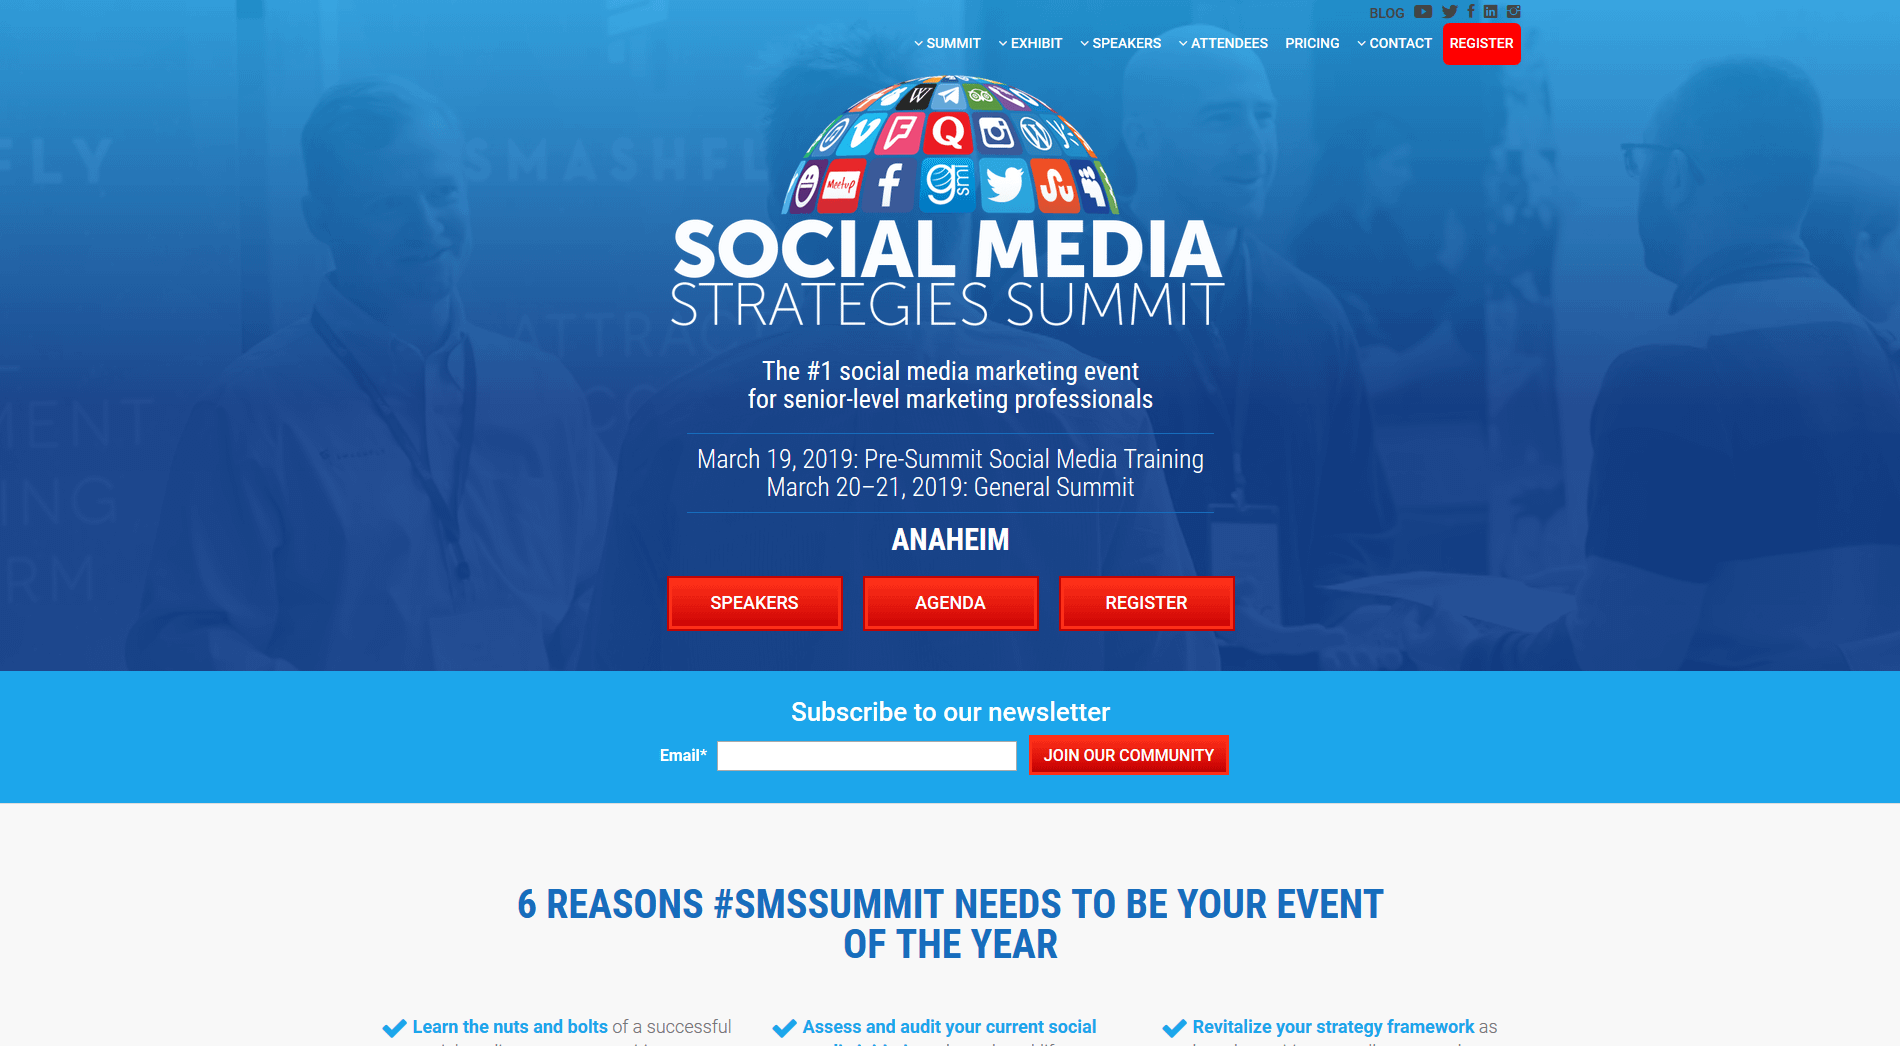 Social Media Strategies Summit will be in Anaheim